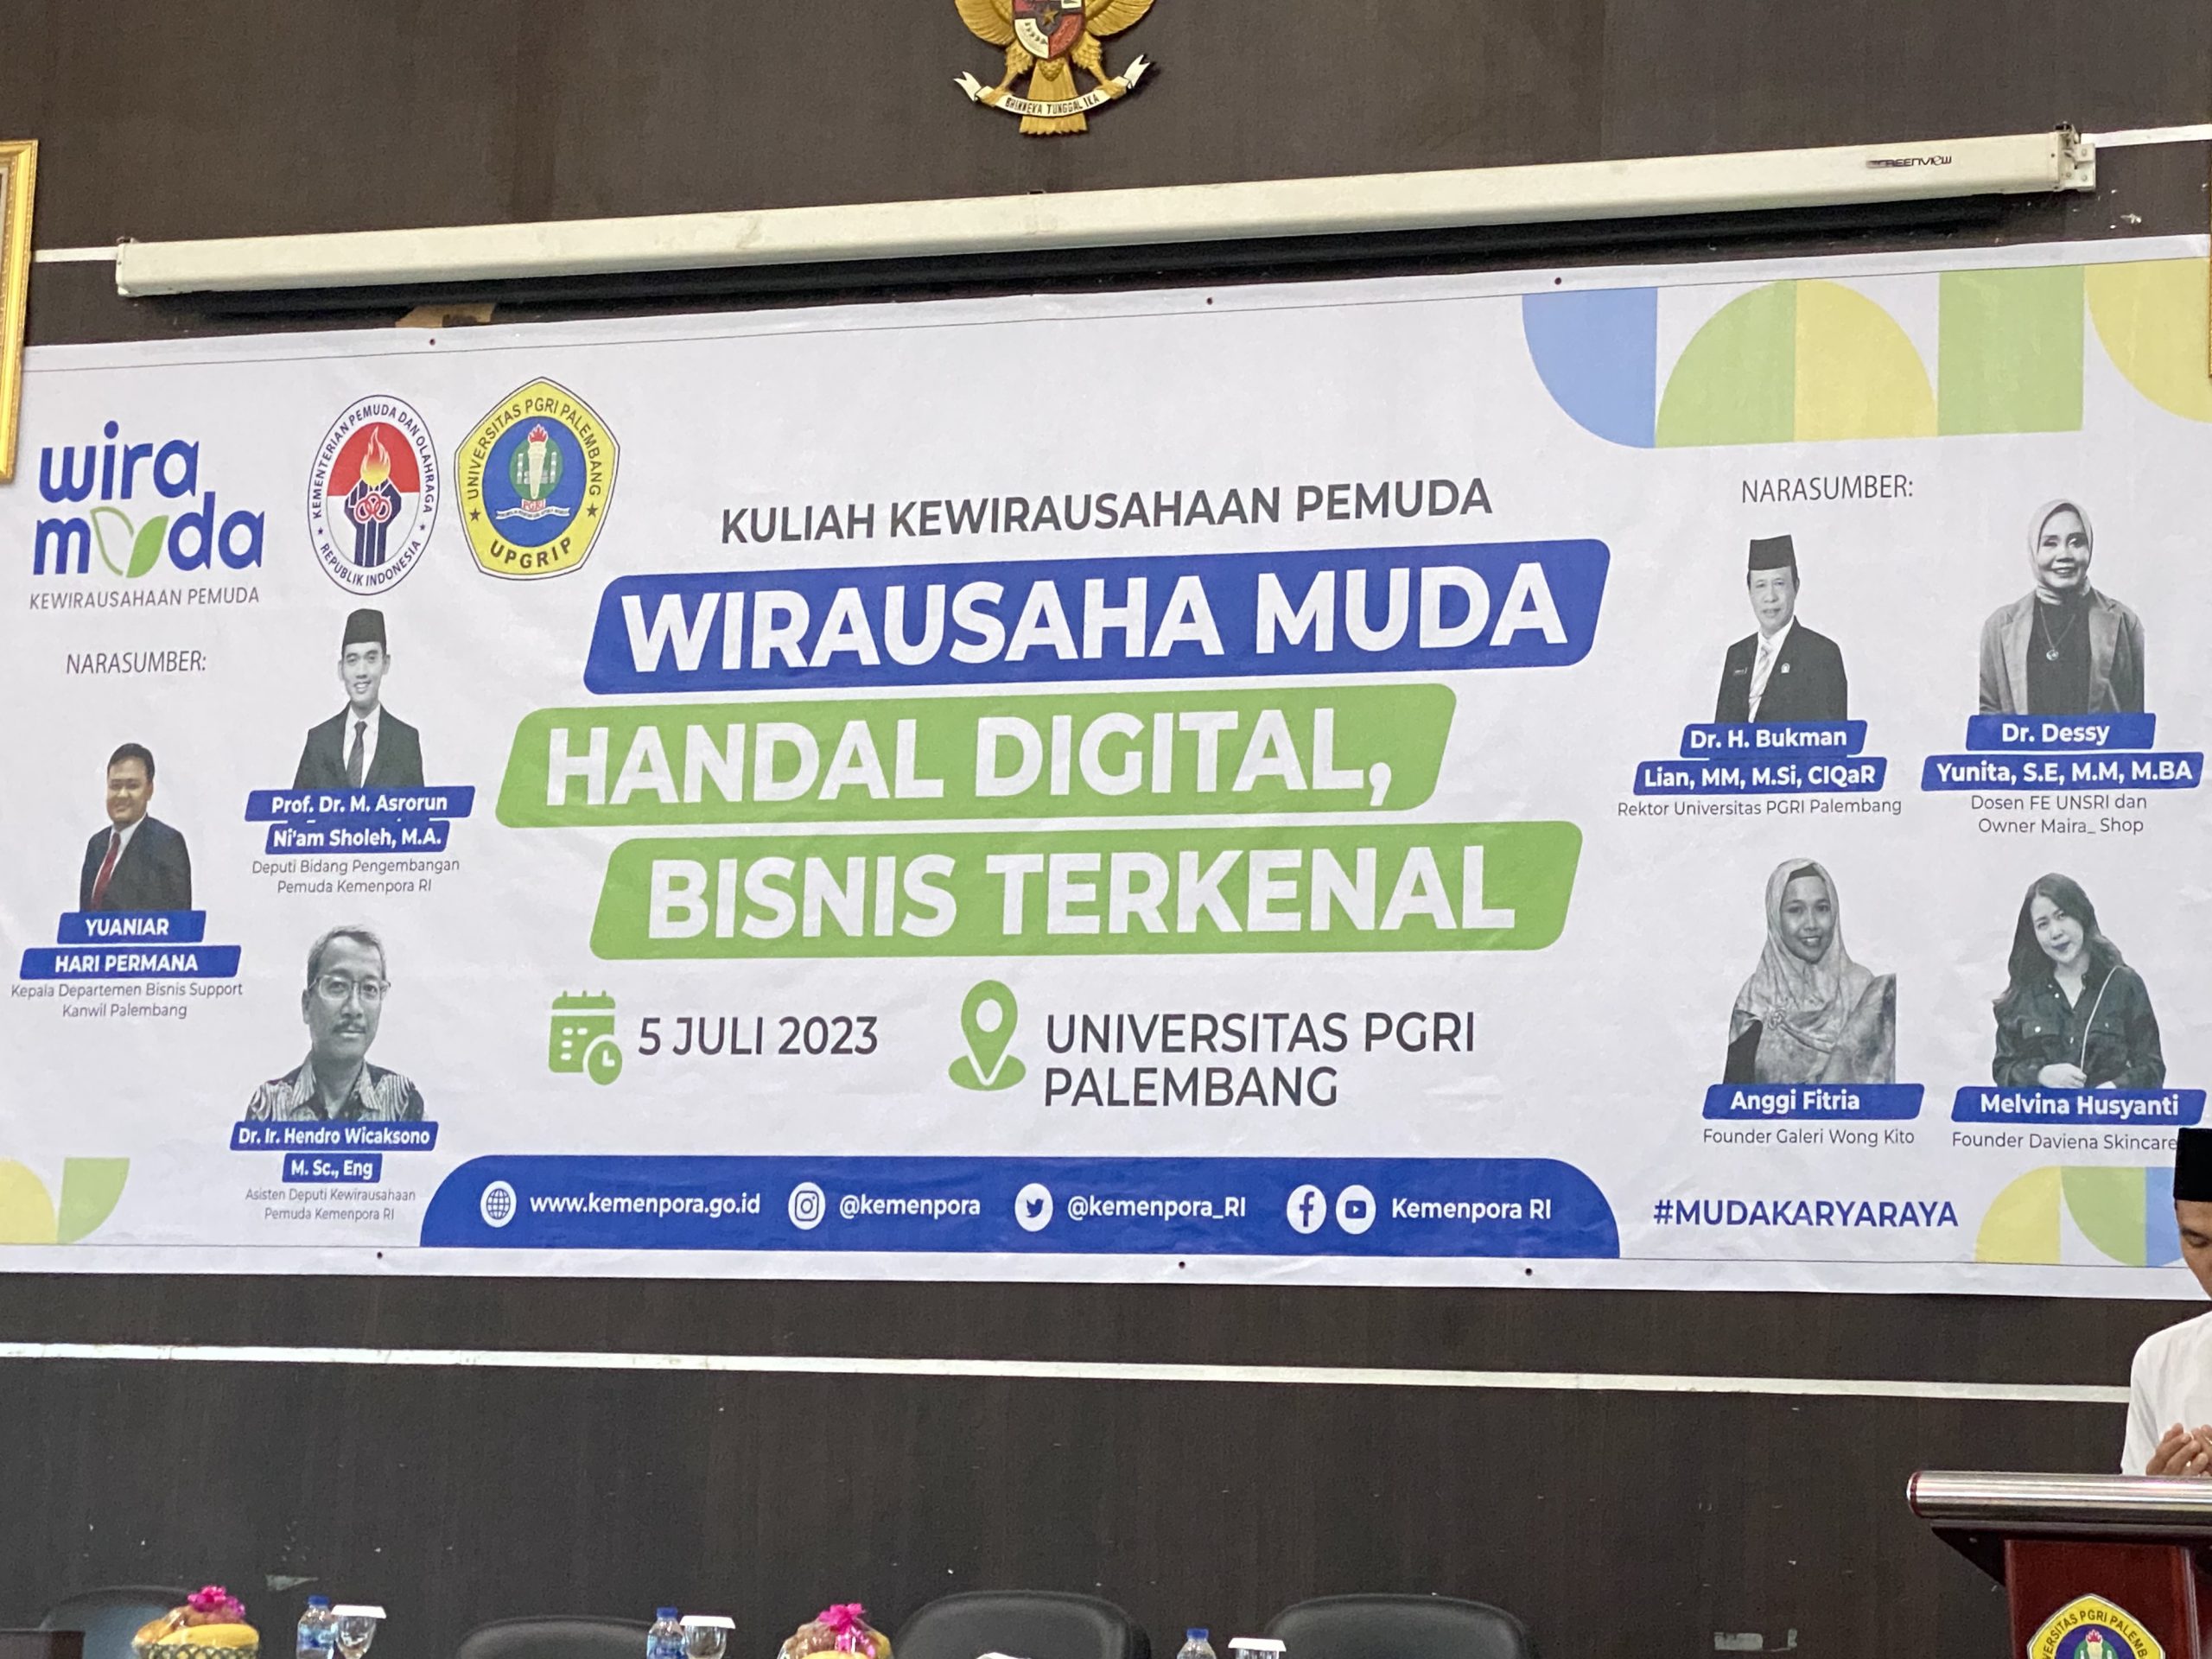 Kemenpora RI dan Universitas PGRI Palembang Mendorong Wirausaha Muda Berbasis Digital